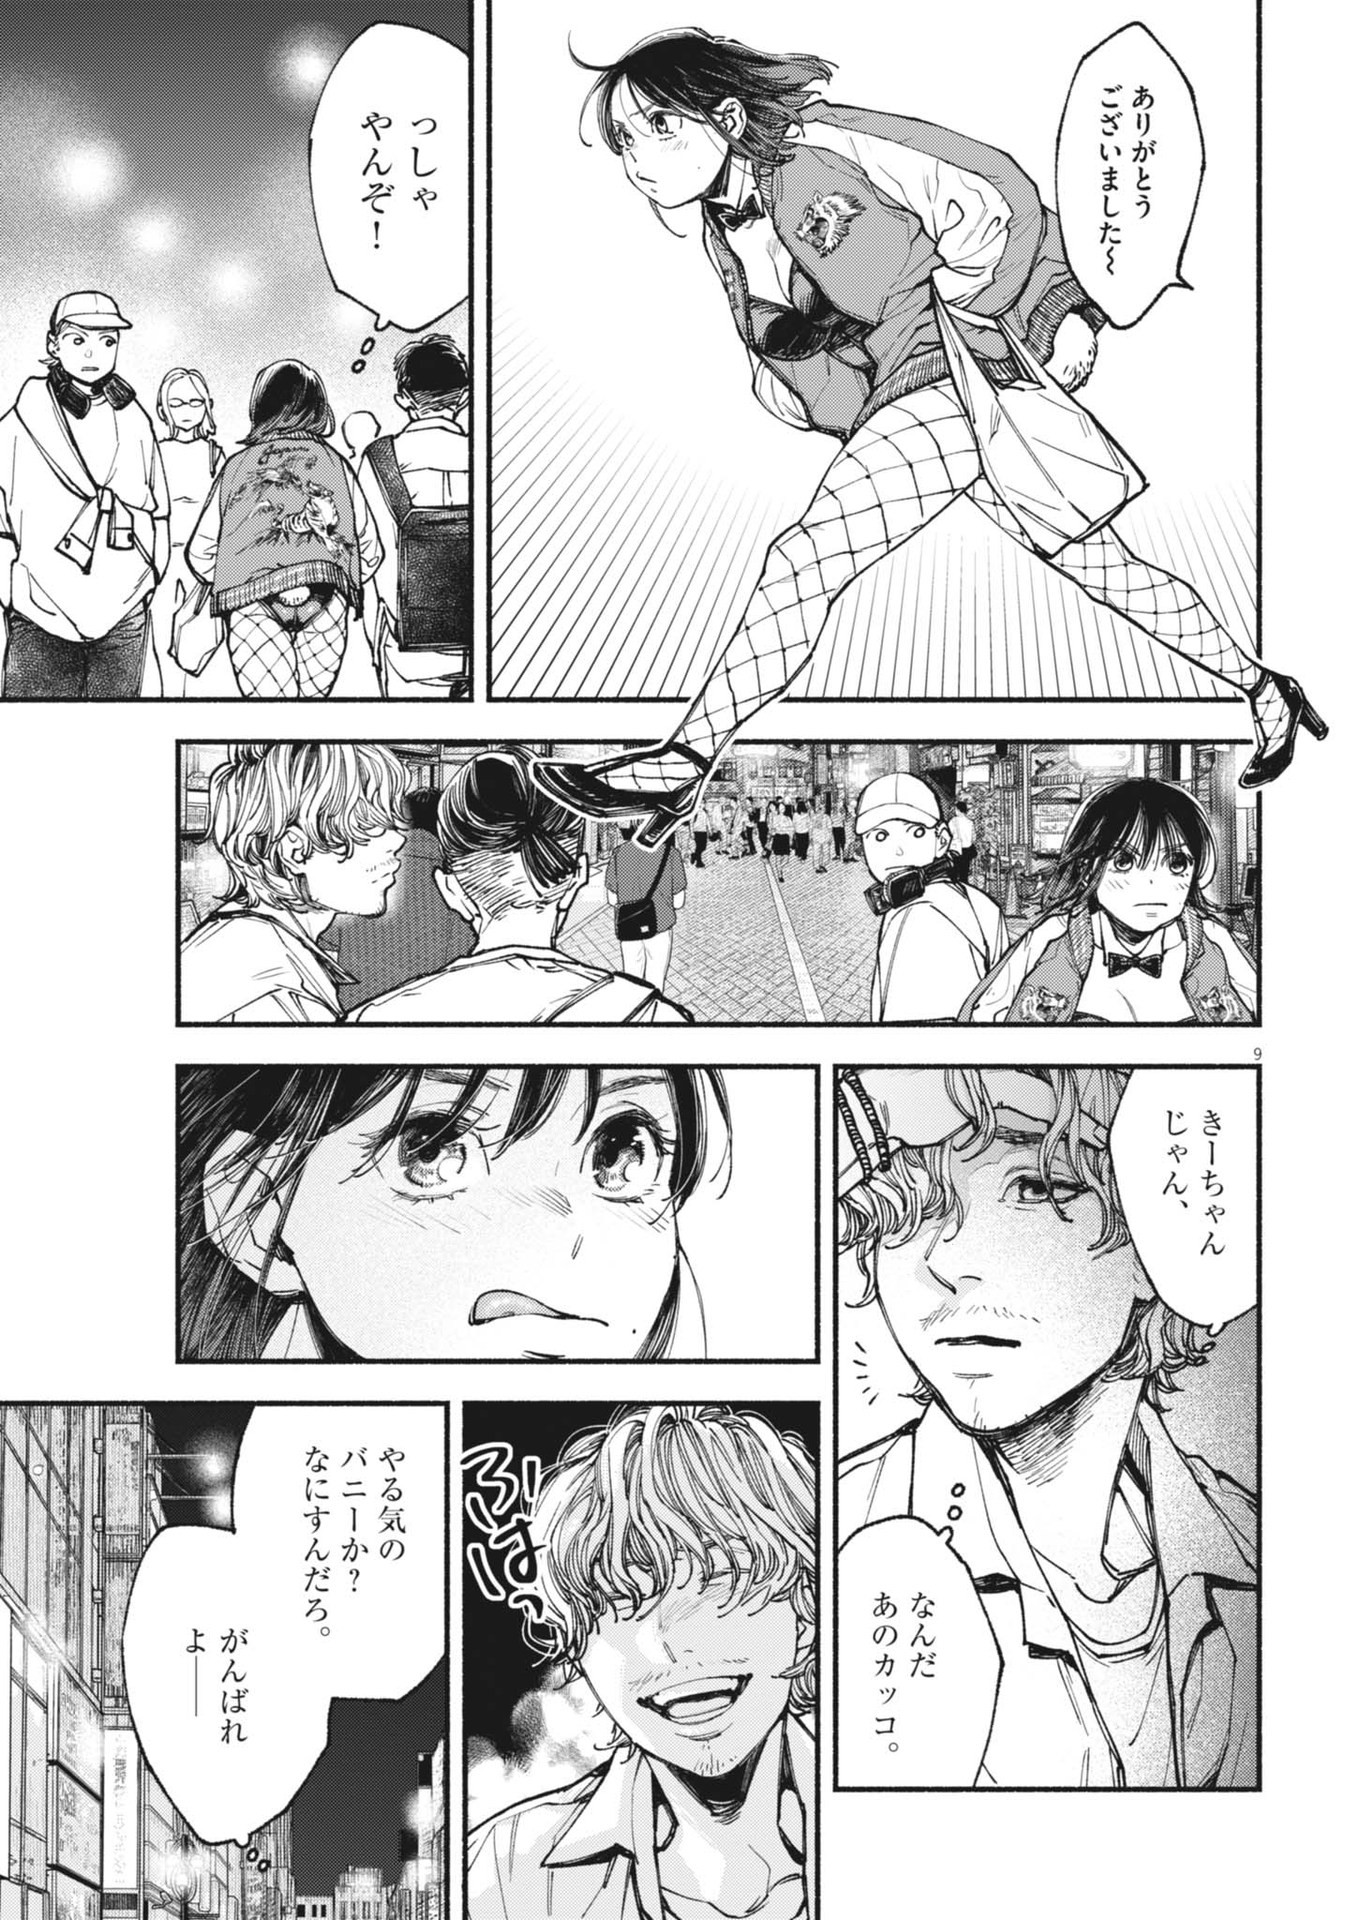 Konoyo wa Tatakau Kachi ga Aru  - Chapter 22 - Page 9